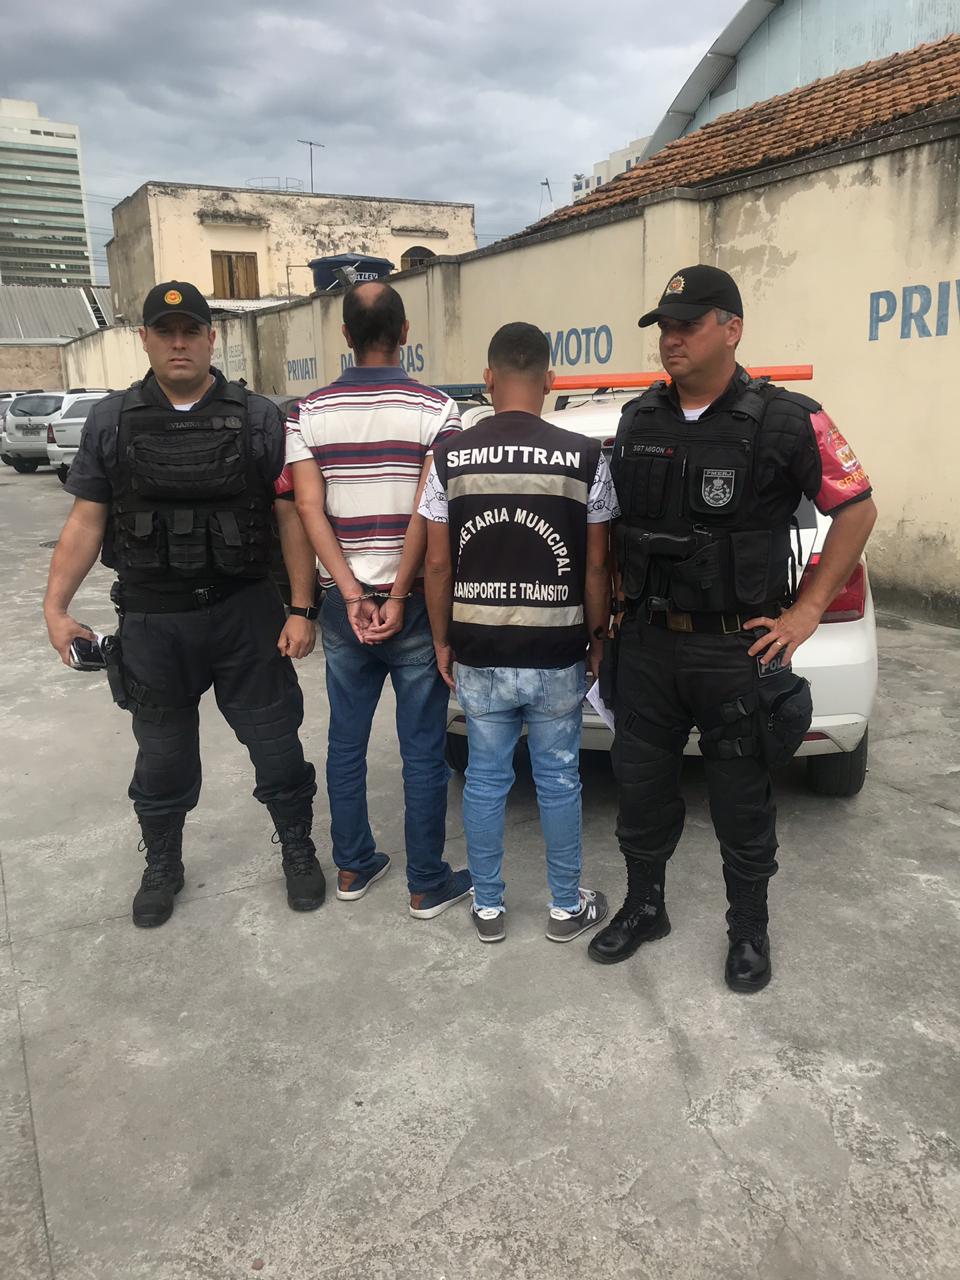 Agentes do PROEIS prendem suspeito  de estelionato em Queimados